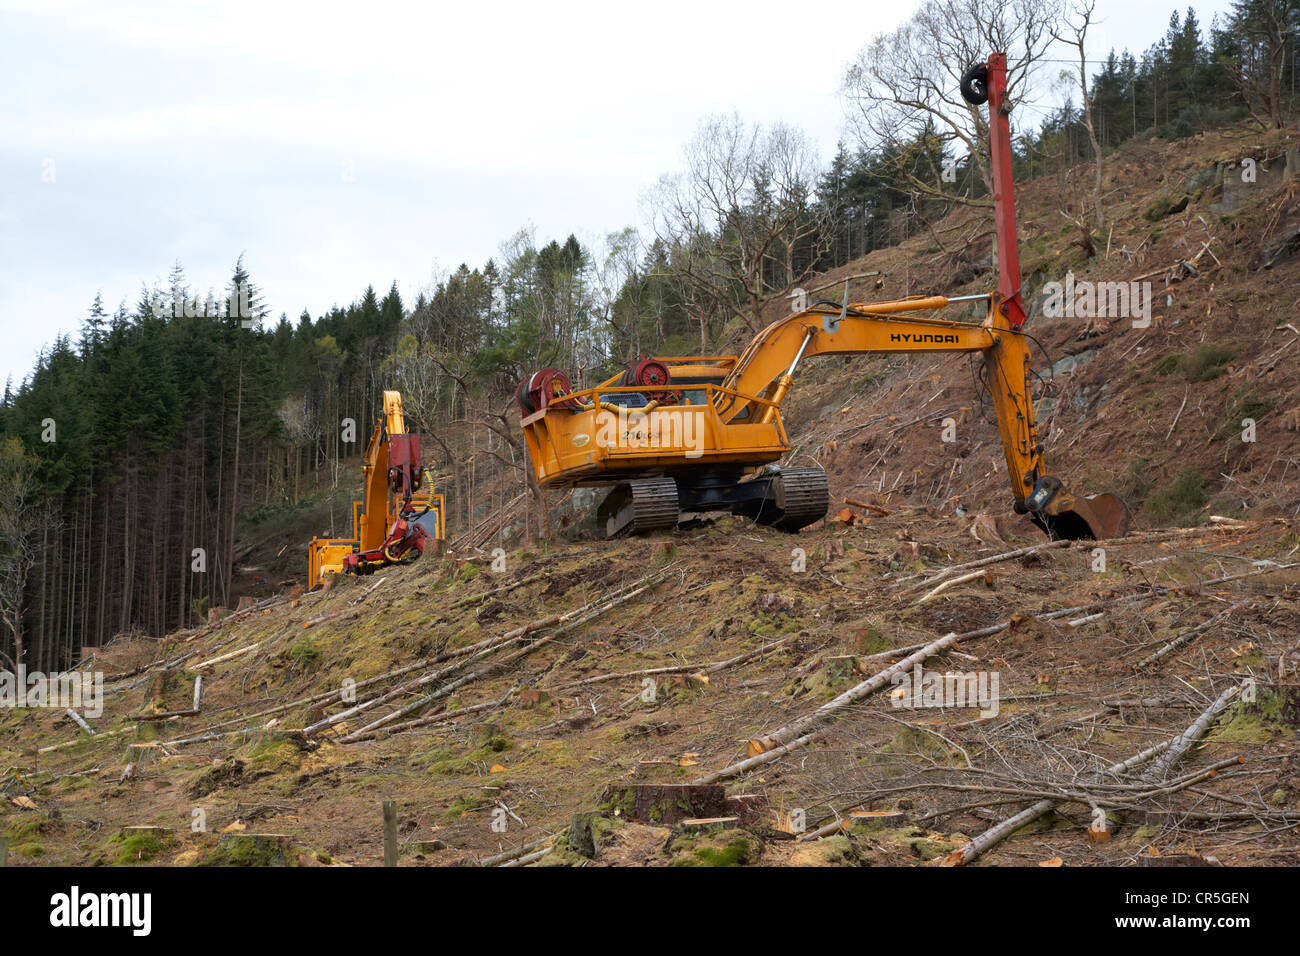 Jcbs e attrezzature pesanti di tagliare gli alberi in una foresta nelle Highlands della Scozia uk Foto Stock